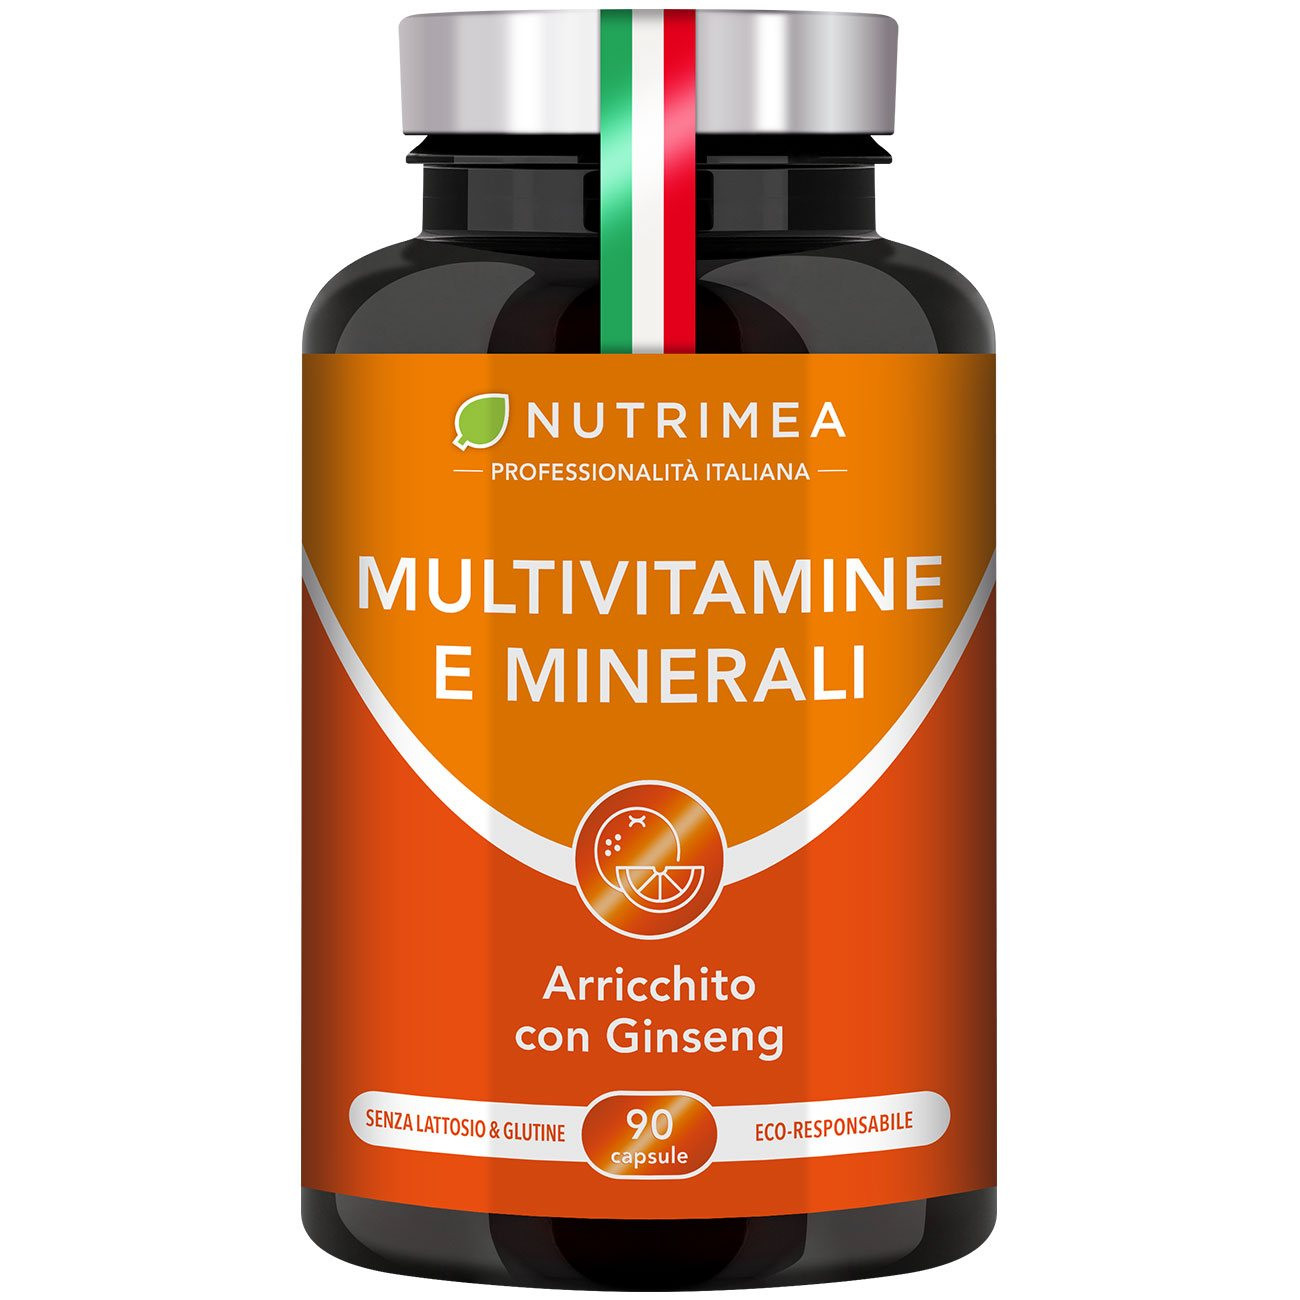 Foto dell'integratore alimentare Multi-vitamine e minerali